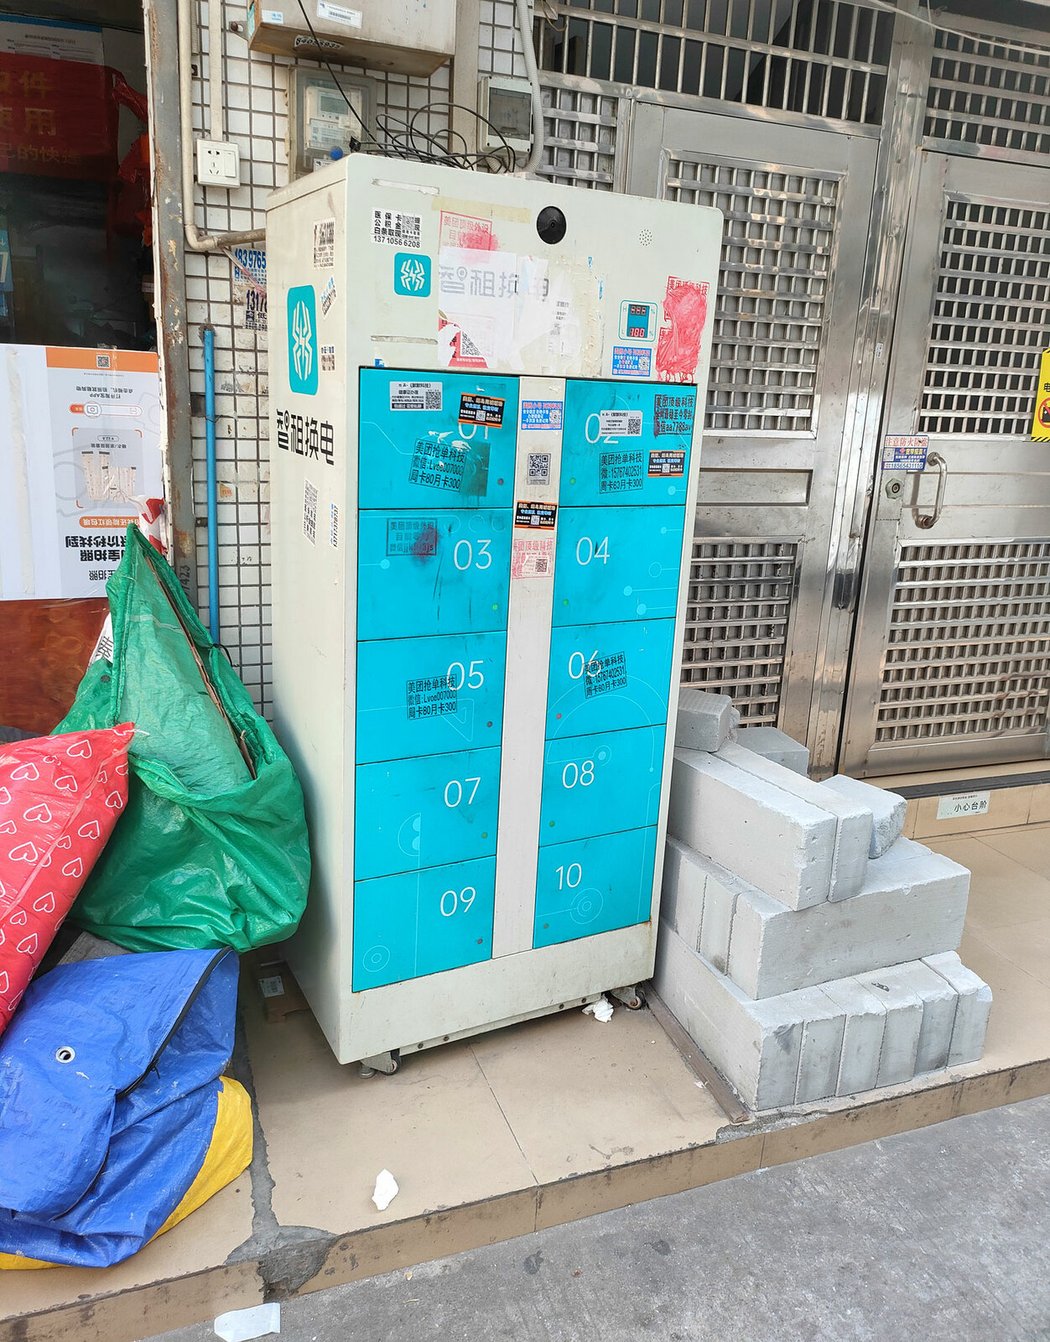 Po celé Číně jsou rozmístěny podobné boxy, sloužící k výměně baterií elektrických skůtrů za nabité. Podobný systém tam provozuje spousta výrobců. Podobně se mimochodem na ulici půjčují i powerbanky pro mobily.